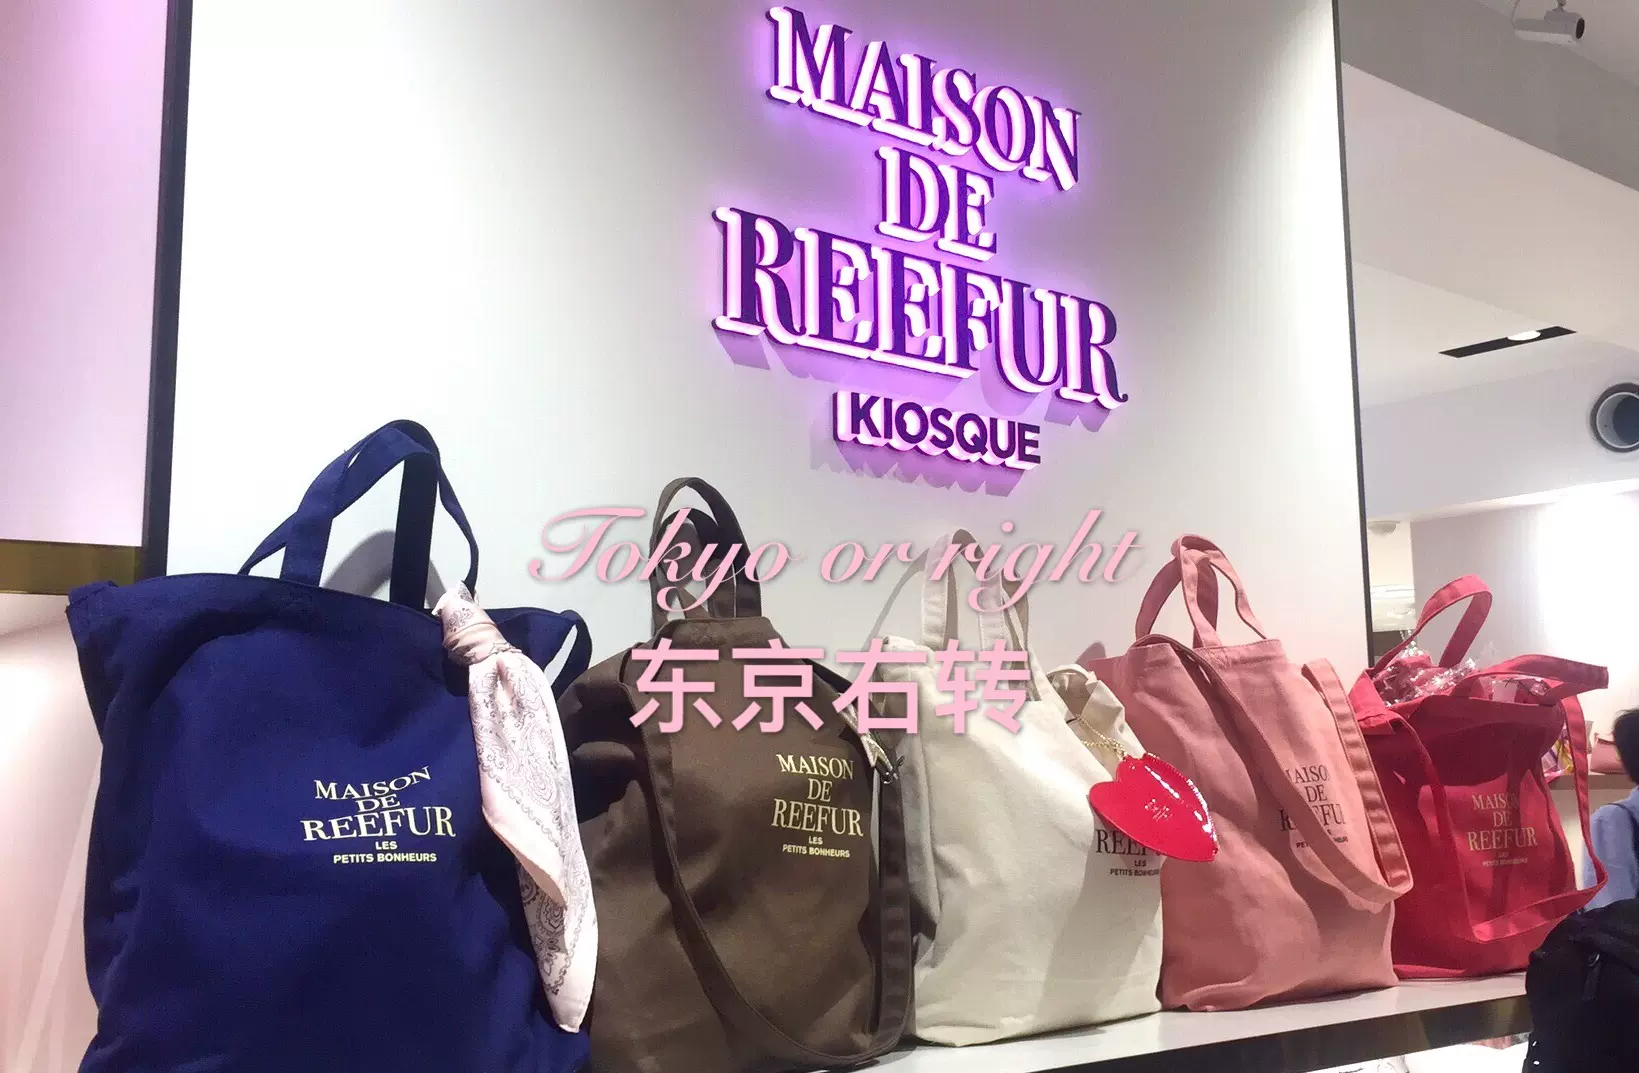 现货日本Maison de reefur 2way梨花帆布包单肩手拎包